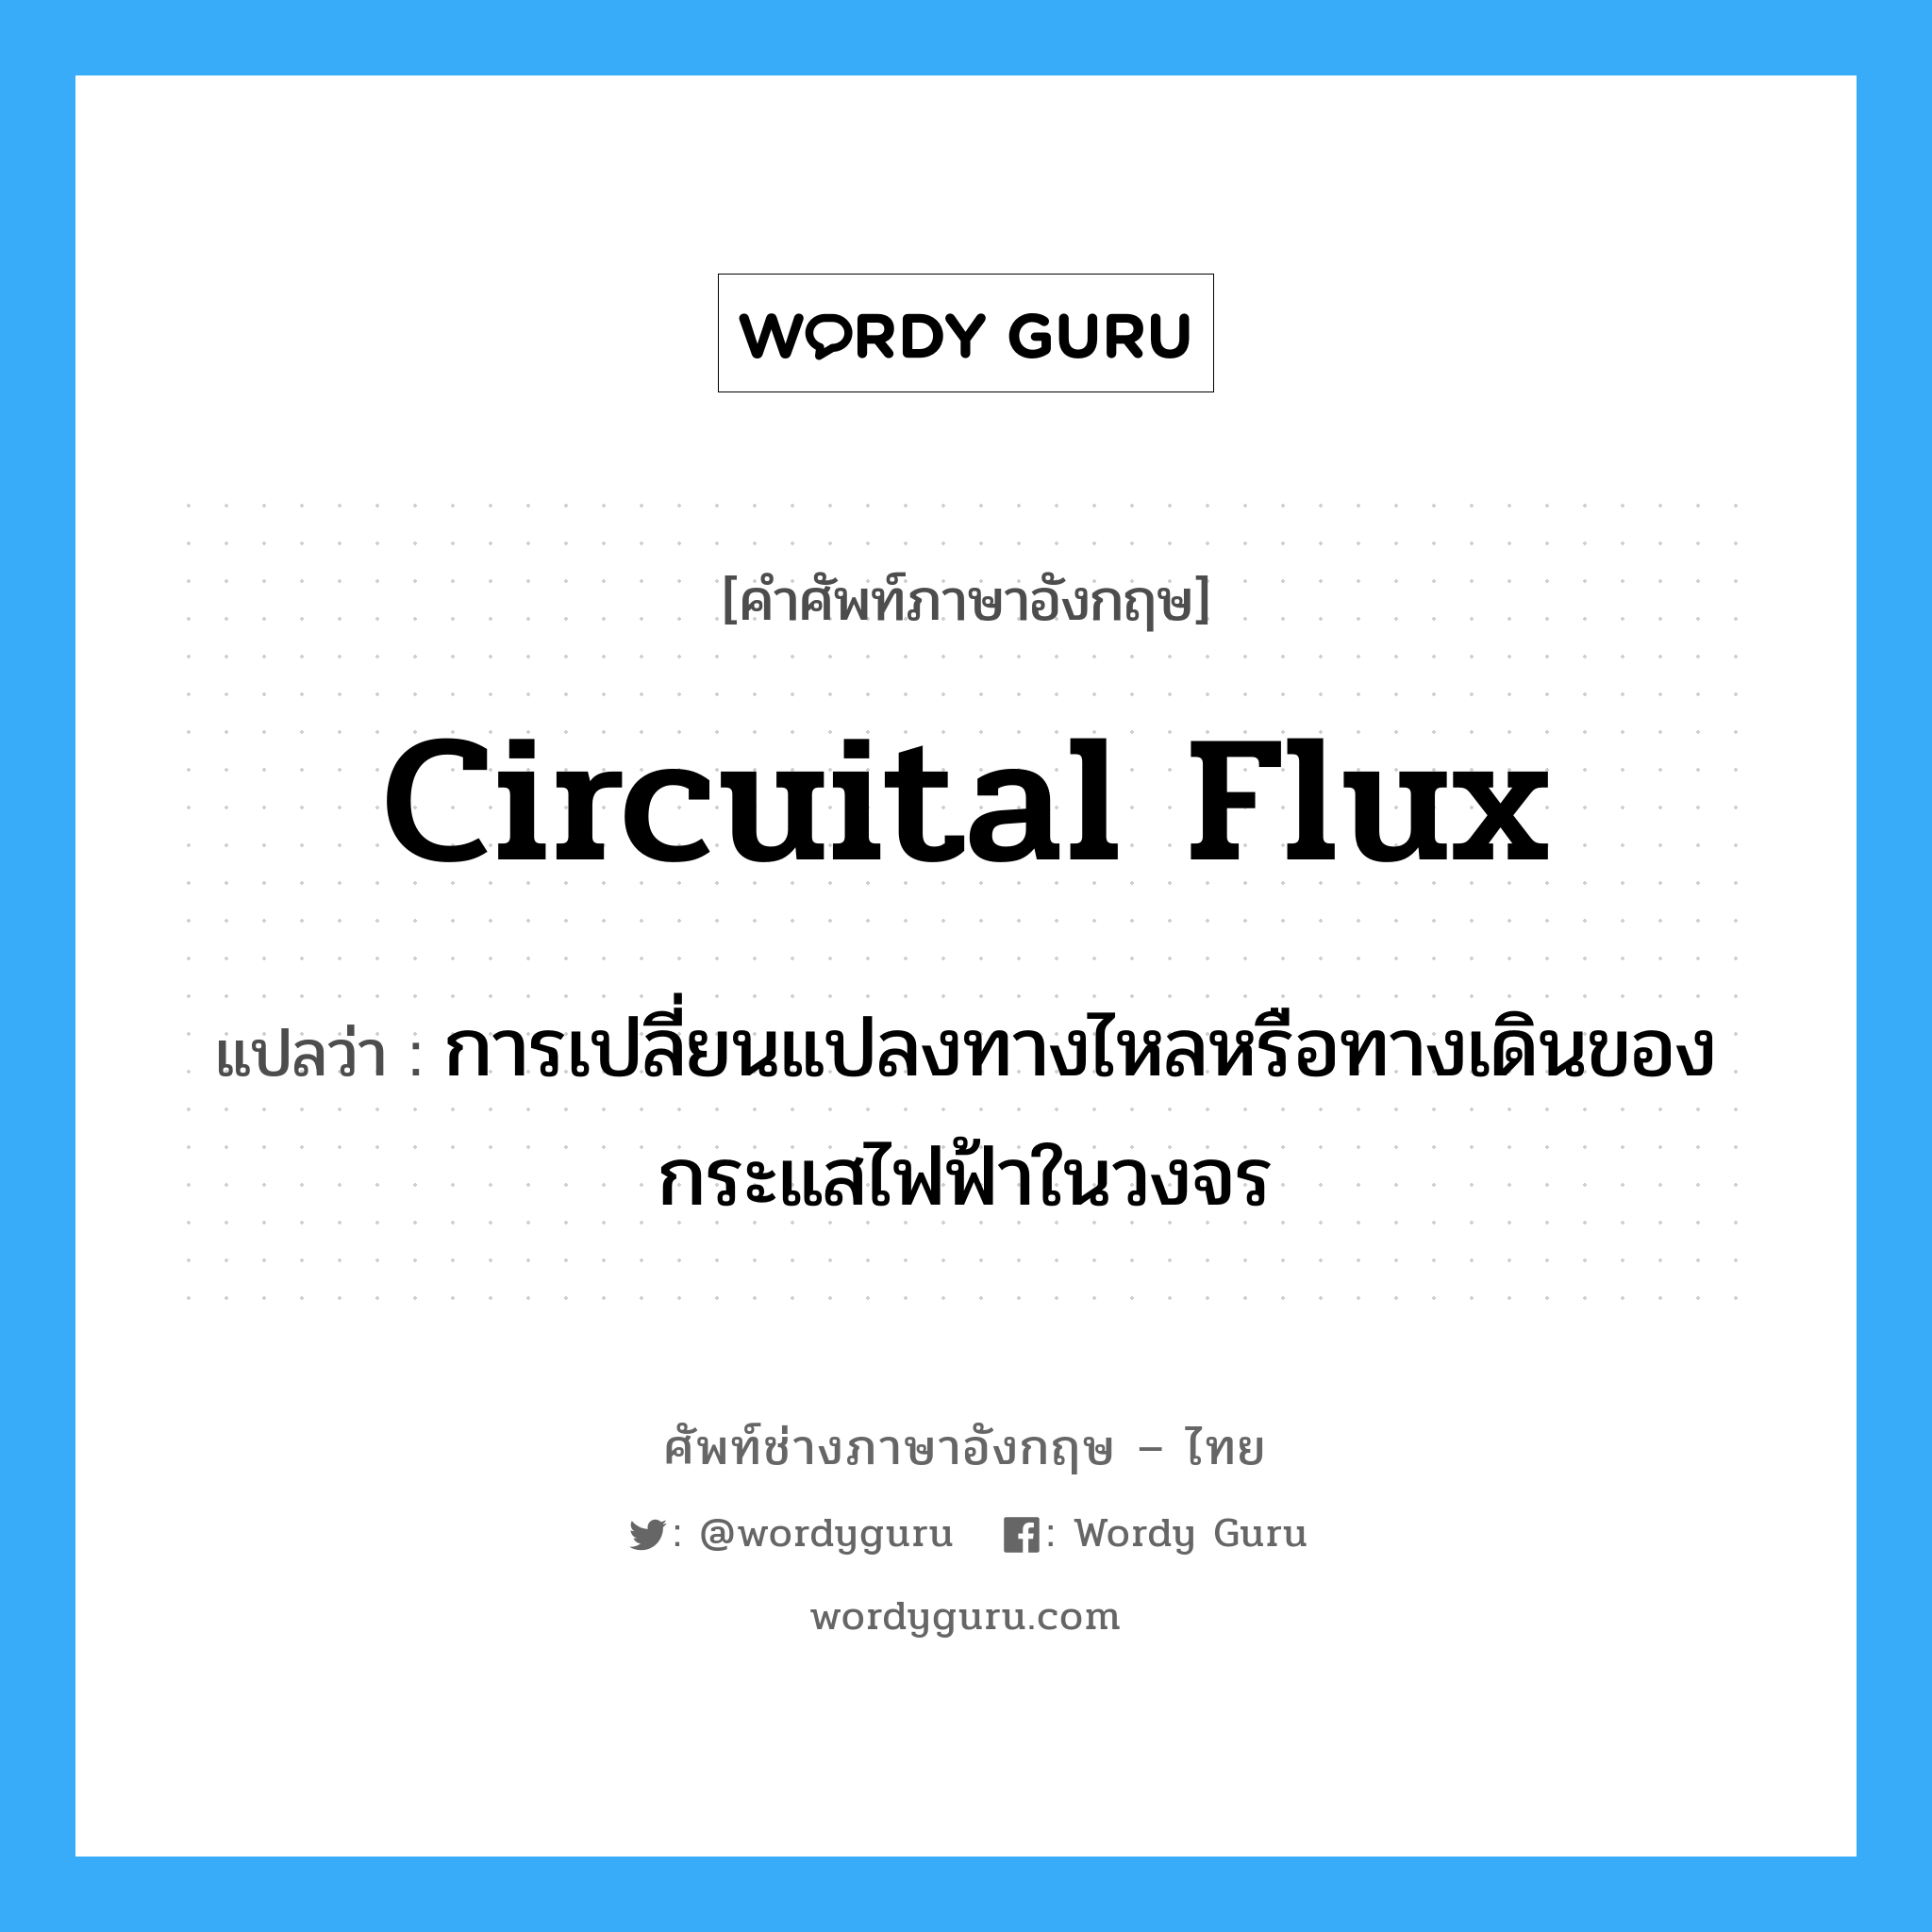 circuital flux แปลว่า?, คำศัพท์ช่างภาษาอังกฤษ - ไทย circuital flux คำศัพท์ภาษาอังกฤษ circuital flux แปลว่า การเปลี่ยนแปลงทางไหลหรือทางเดินของกระแสไฟฟ้าในวงจร